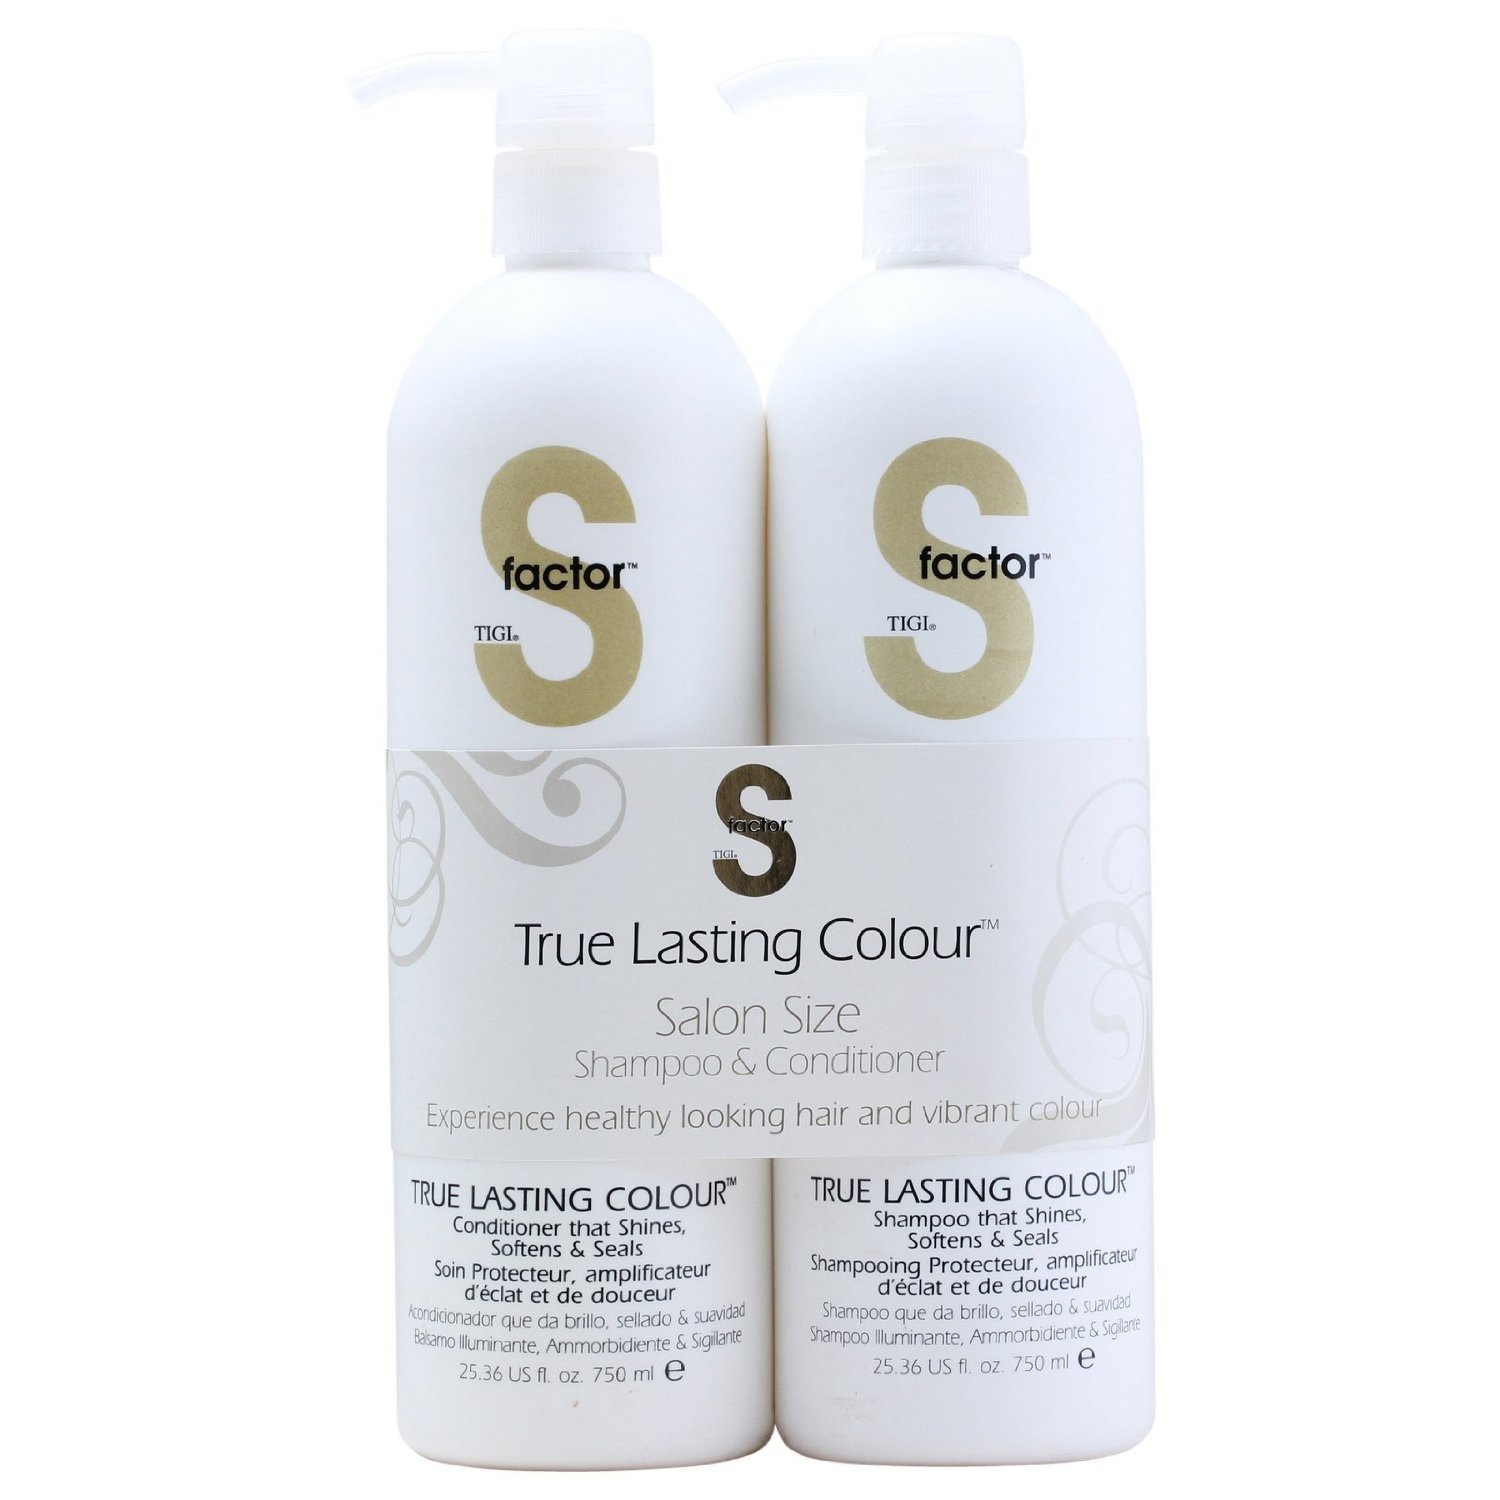 TIGI S-factor True Lasting Shampoo and Duo - Shampoo & Conditioner at H-E-B